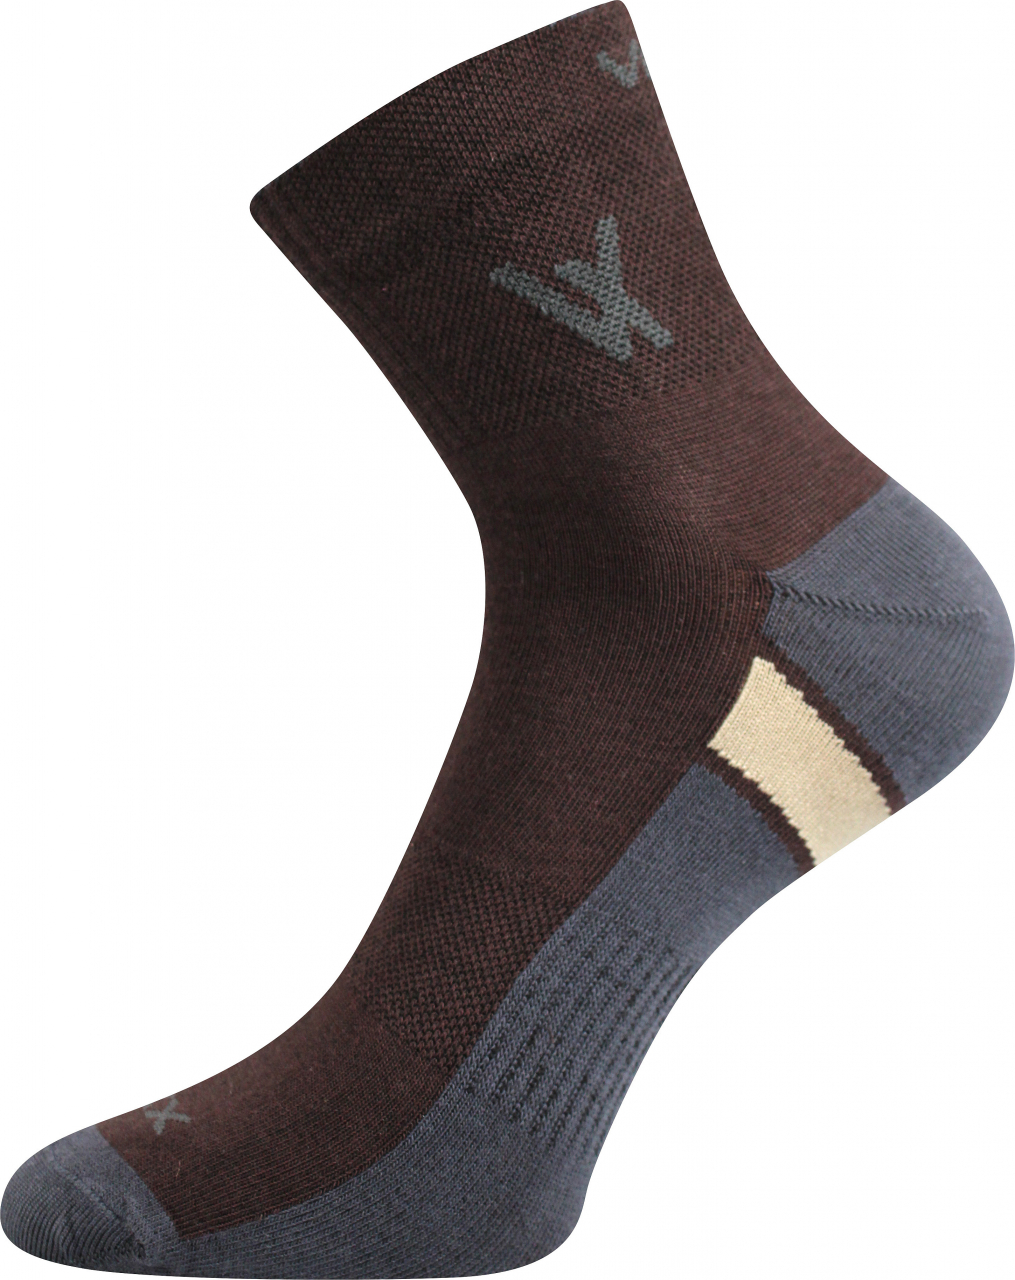 Ponožky sportovní Voxx Neo - hnědé, 39-42